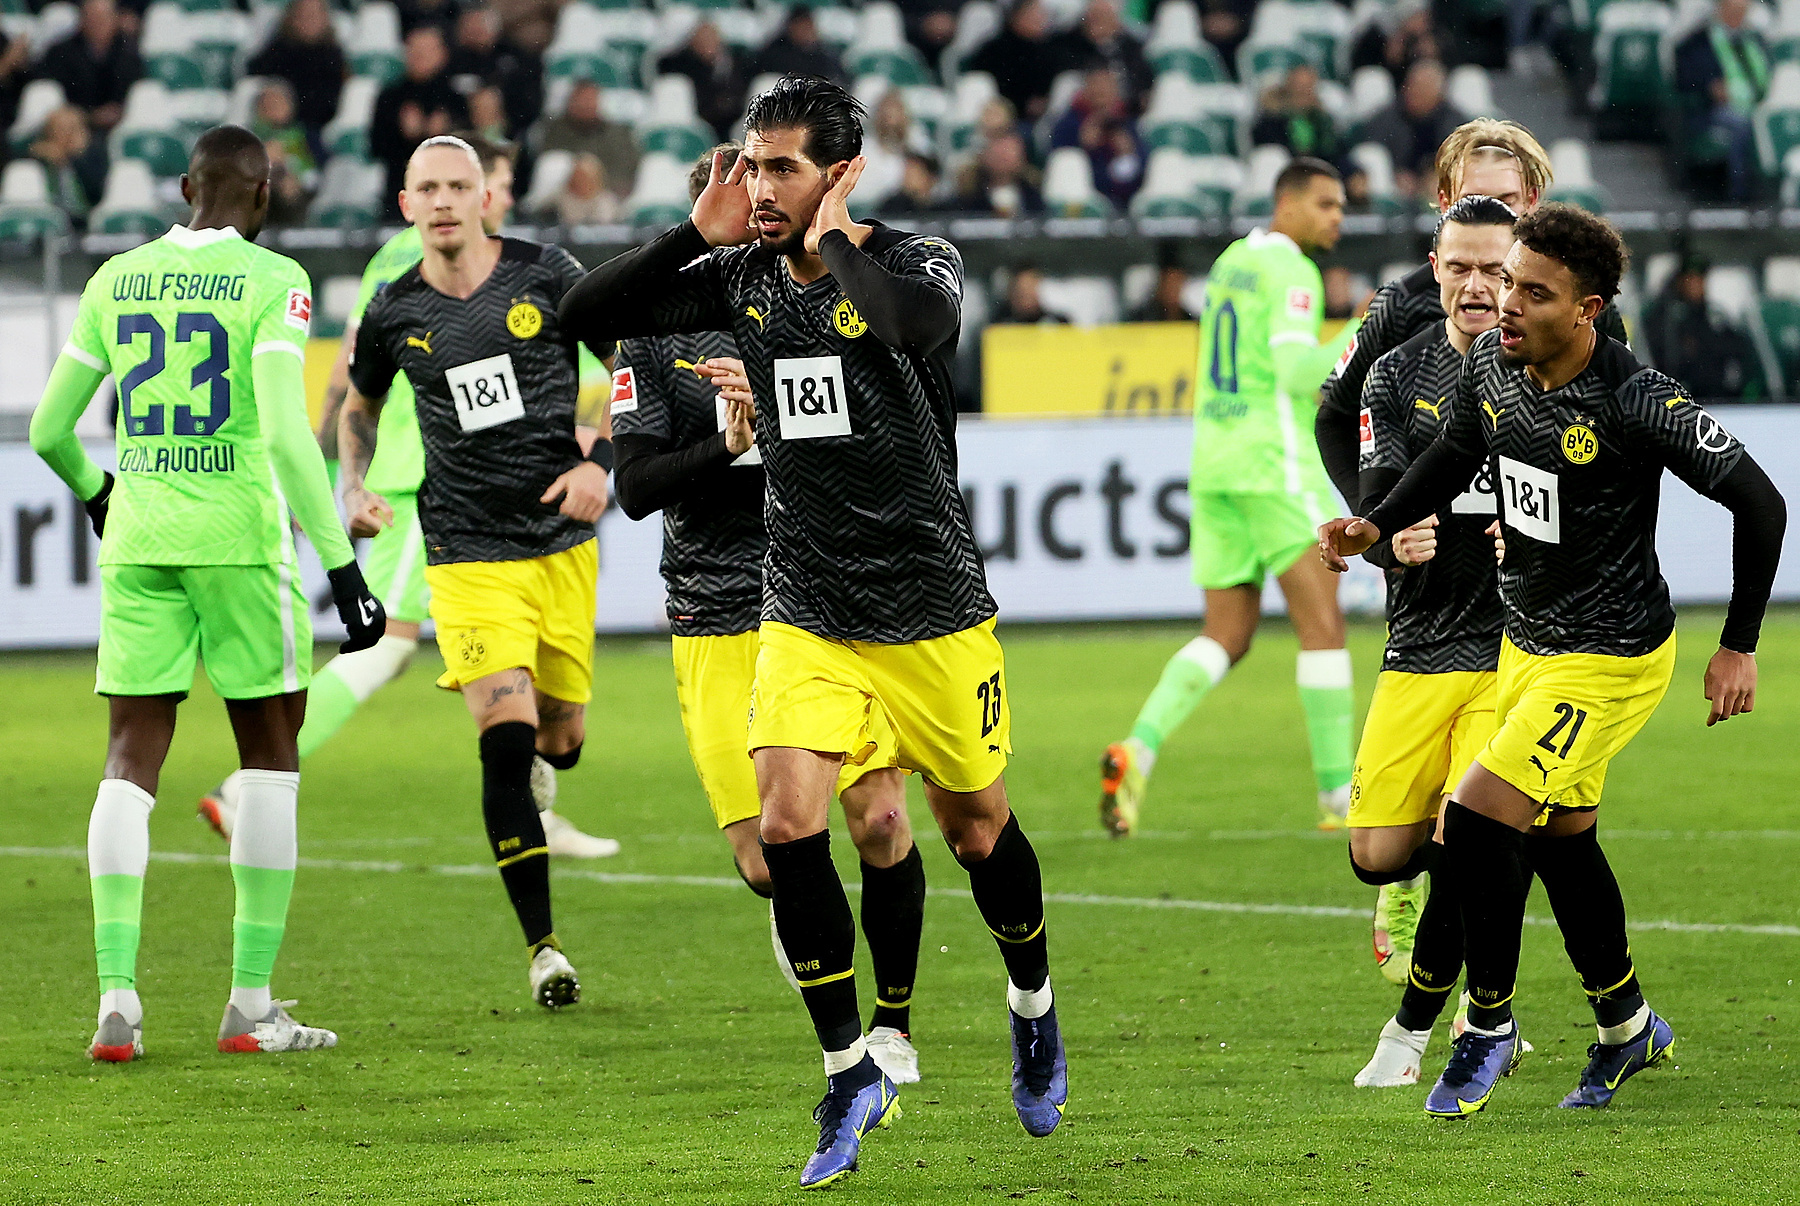 Borussia Dortmund – VfL Wolfsburg typy i kursy bukmacherskie